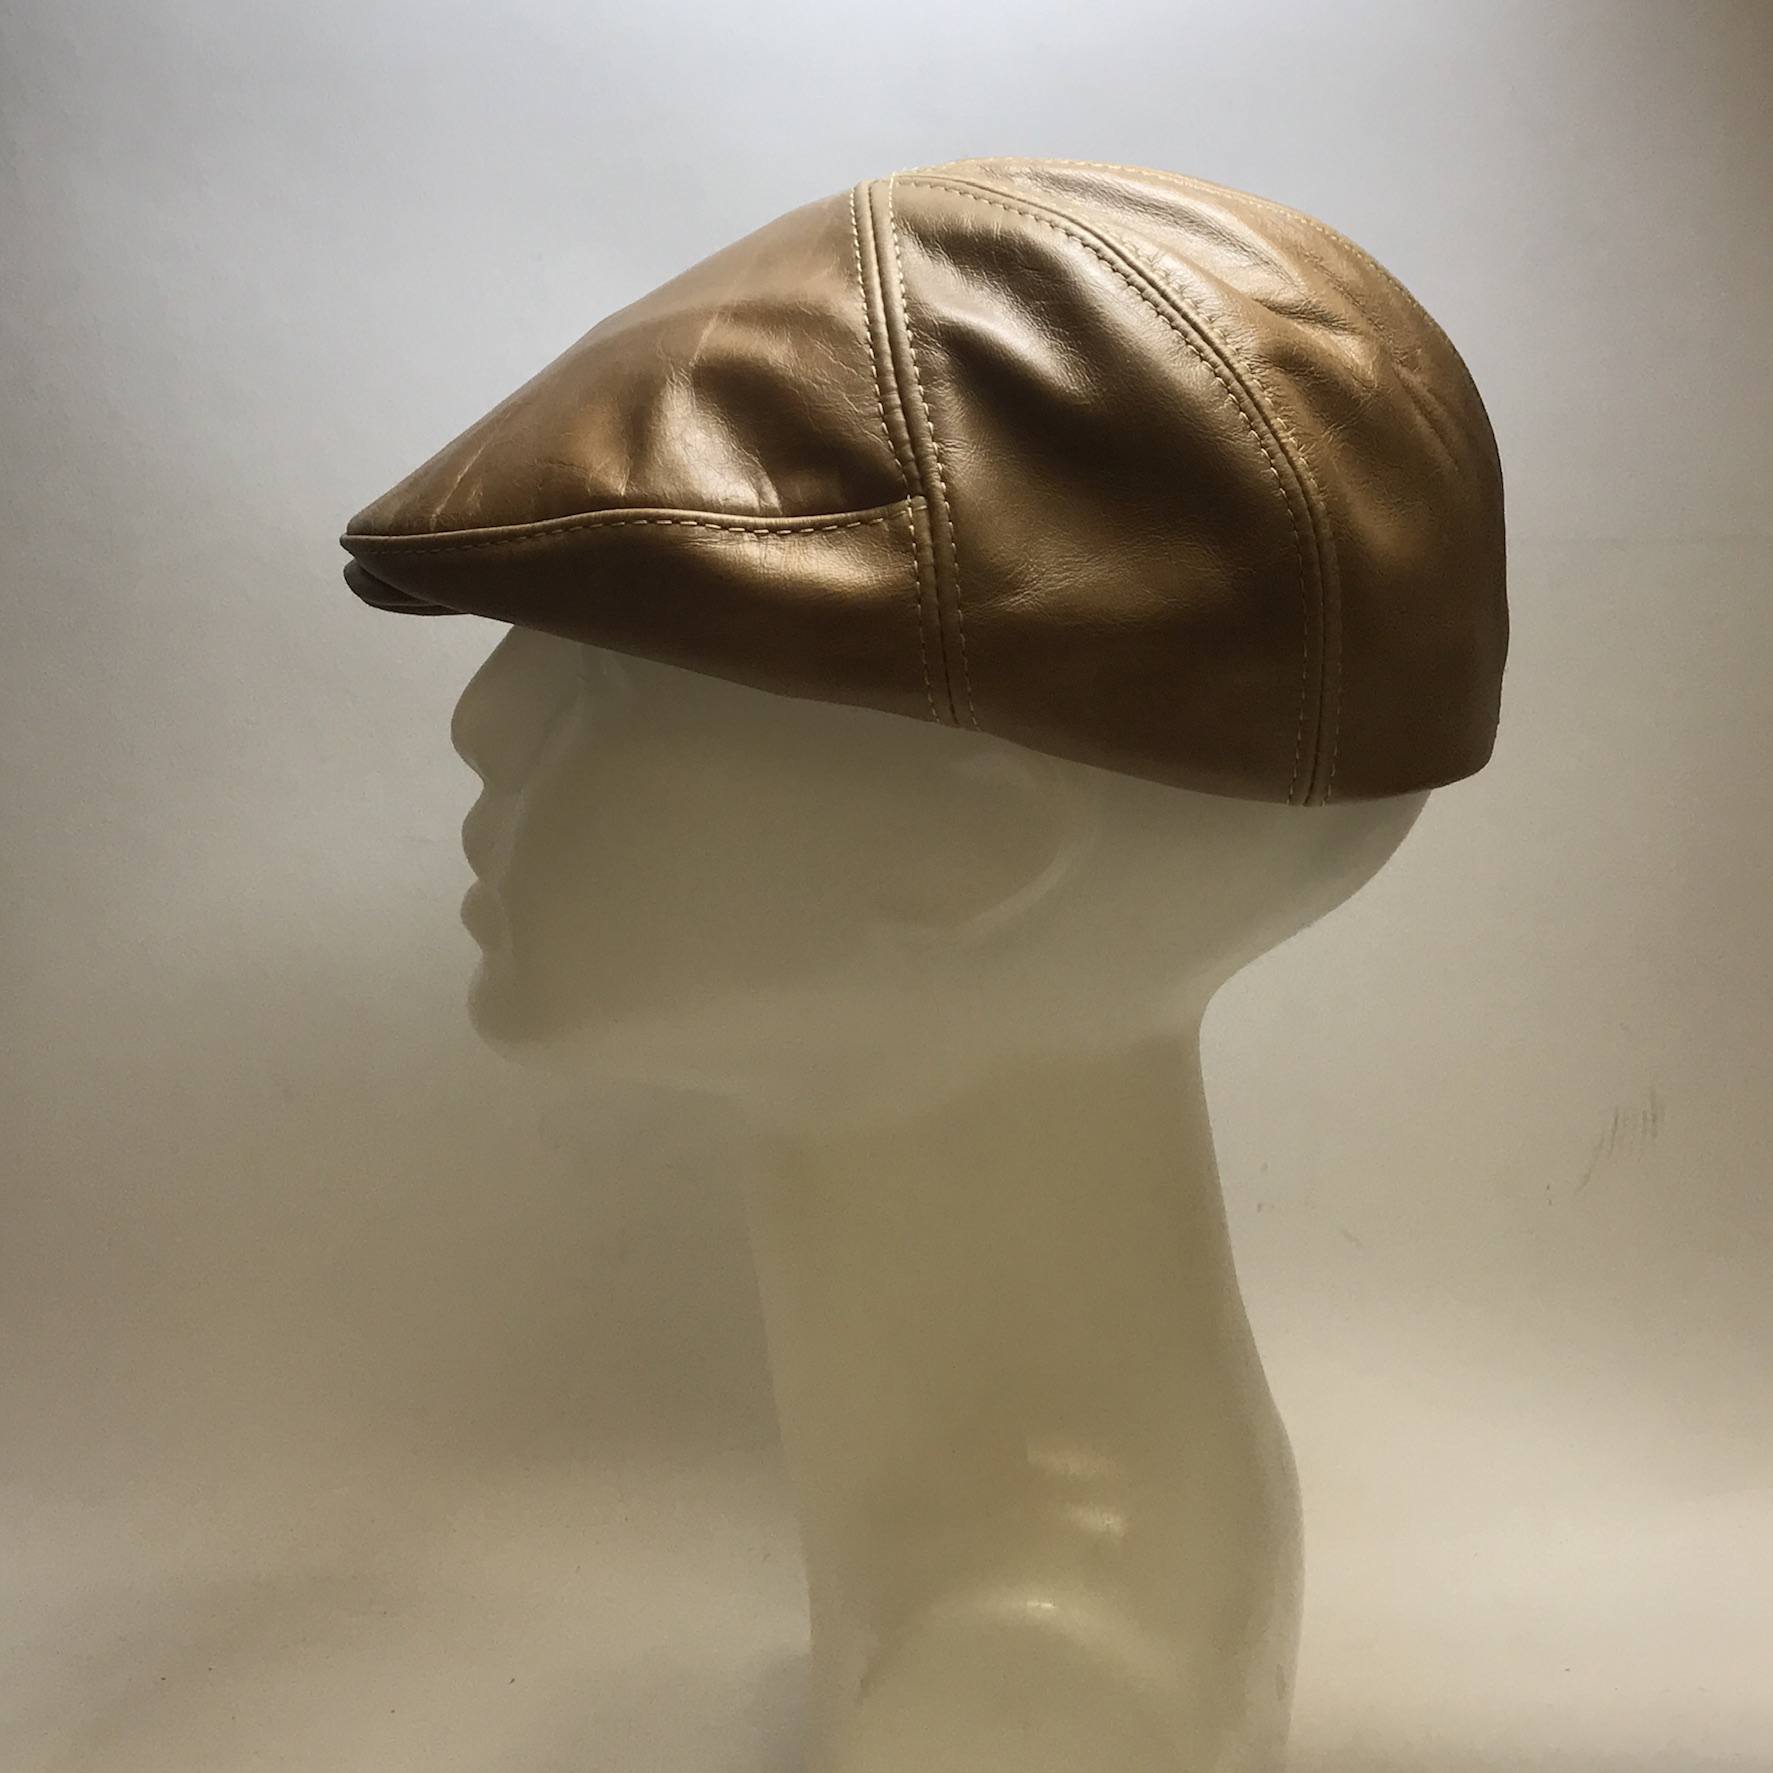 Custom 6 piece cap caramel leather